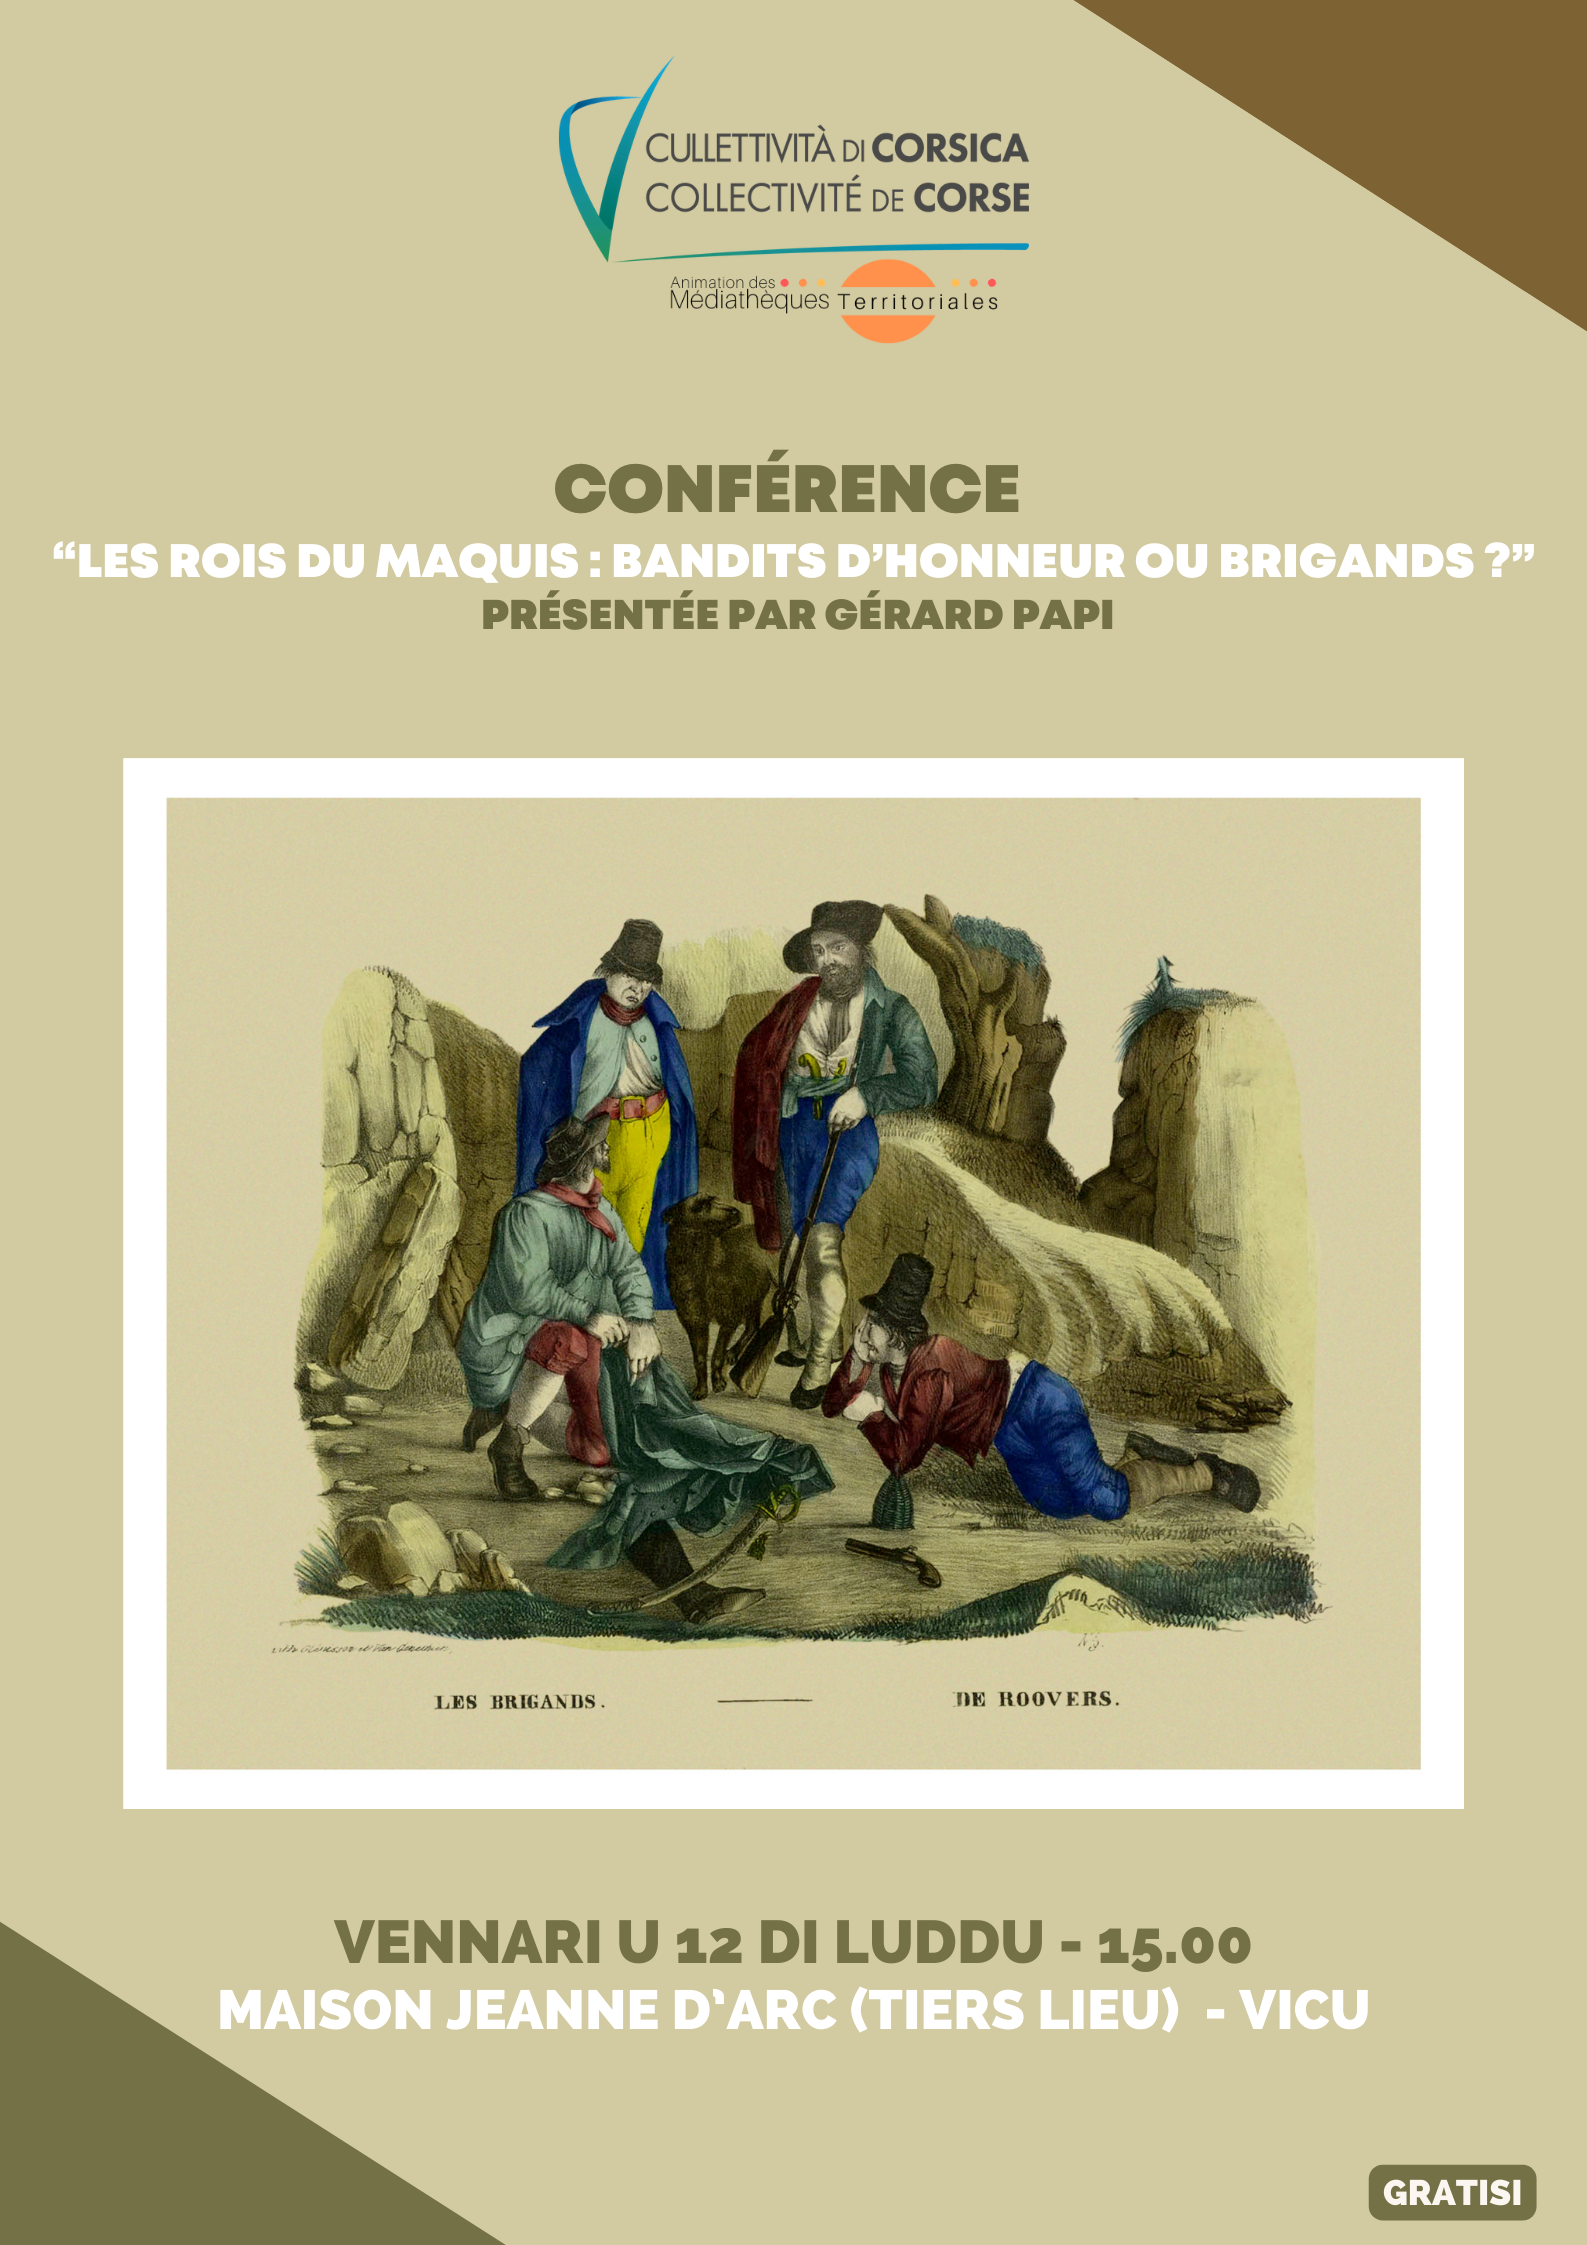 Conférence « Les rois du maquis : bandits d’honneur ou brigands ? » présentée par Gérard Papi - Maison Jeanne d’Arc (Tiers lieu) - Vicu